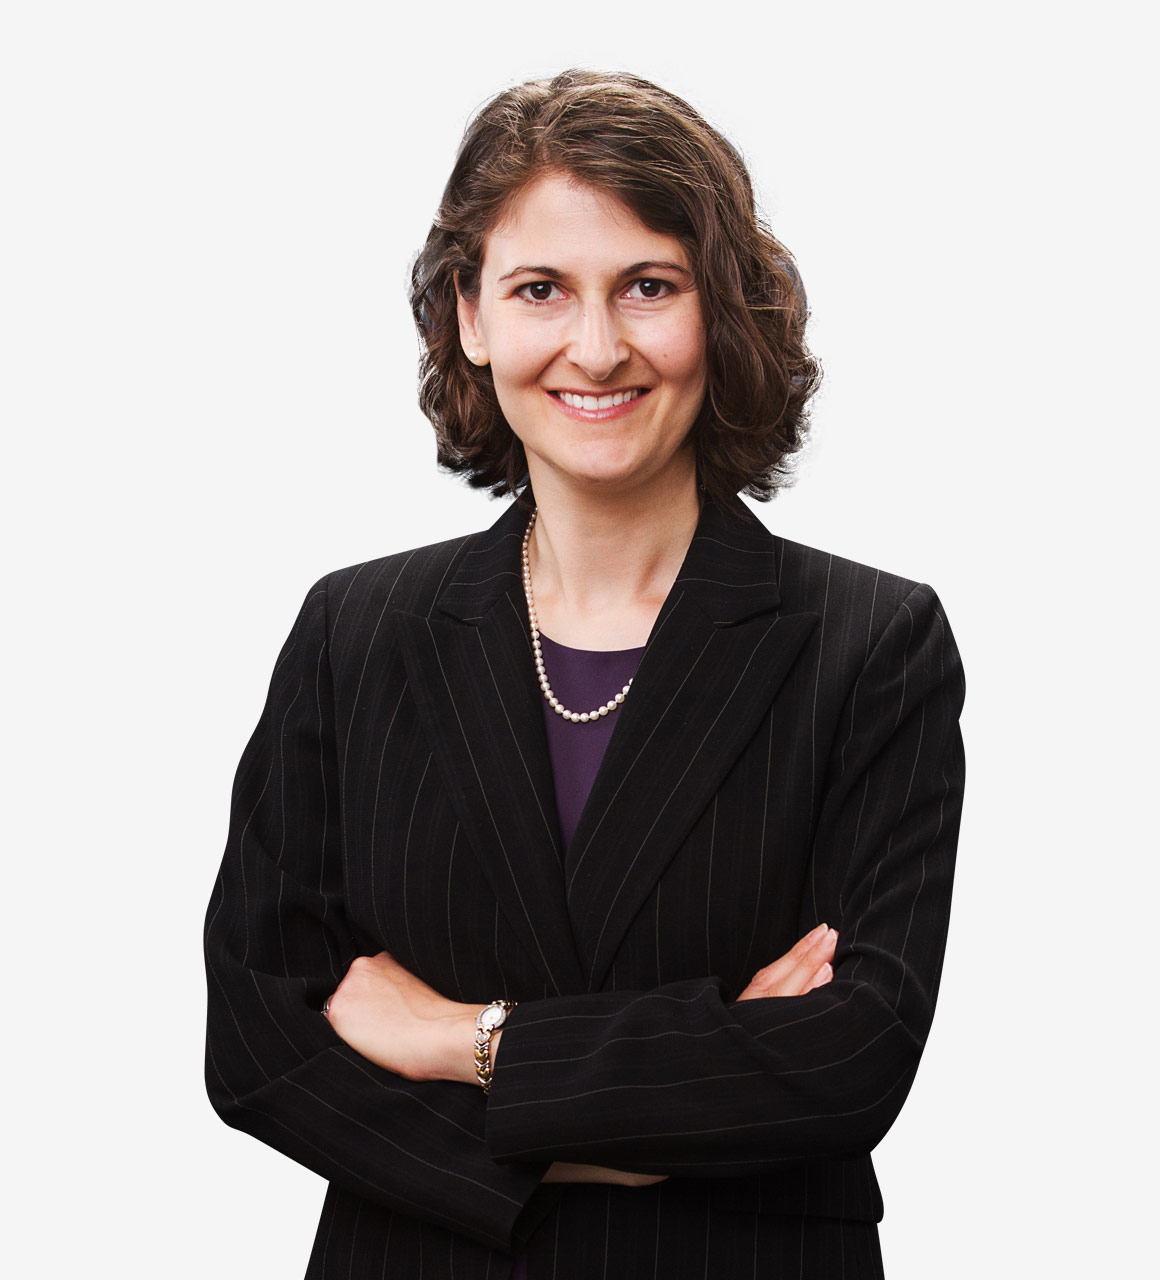 Sarah Benator, counsel